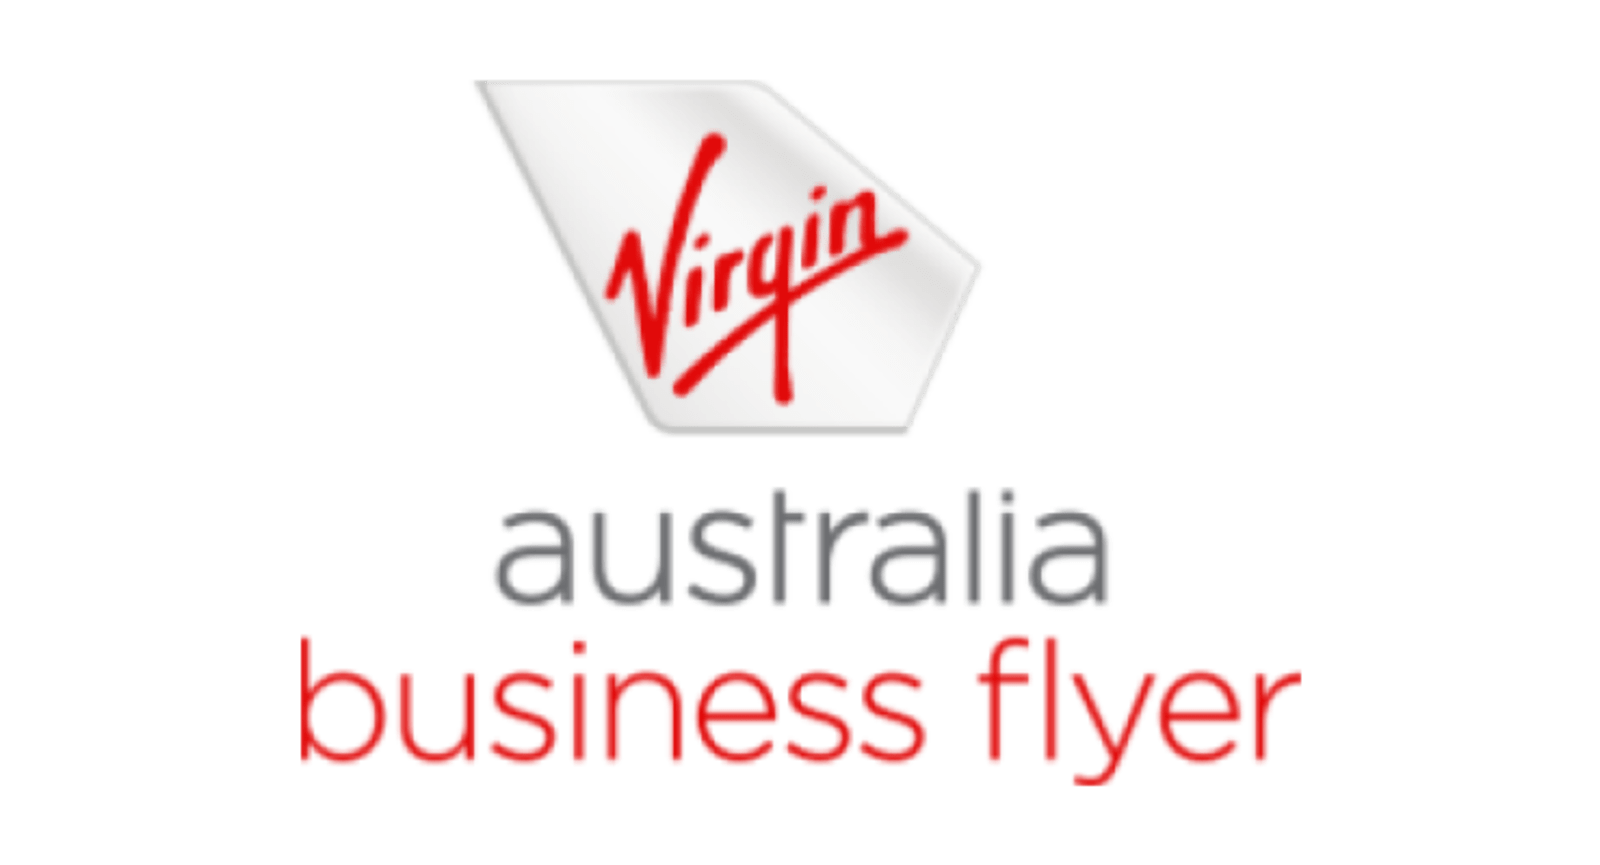 Virgin Logo - Australia business flyer